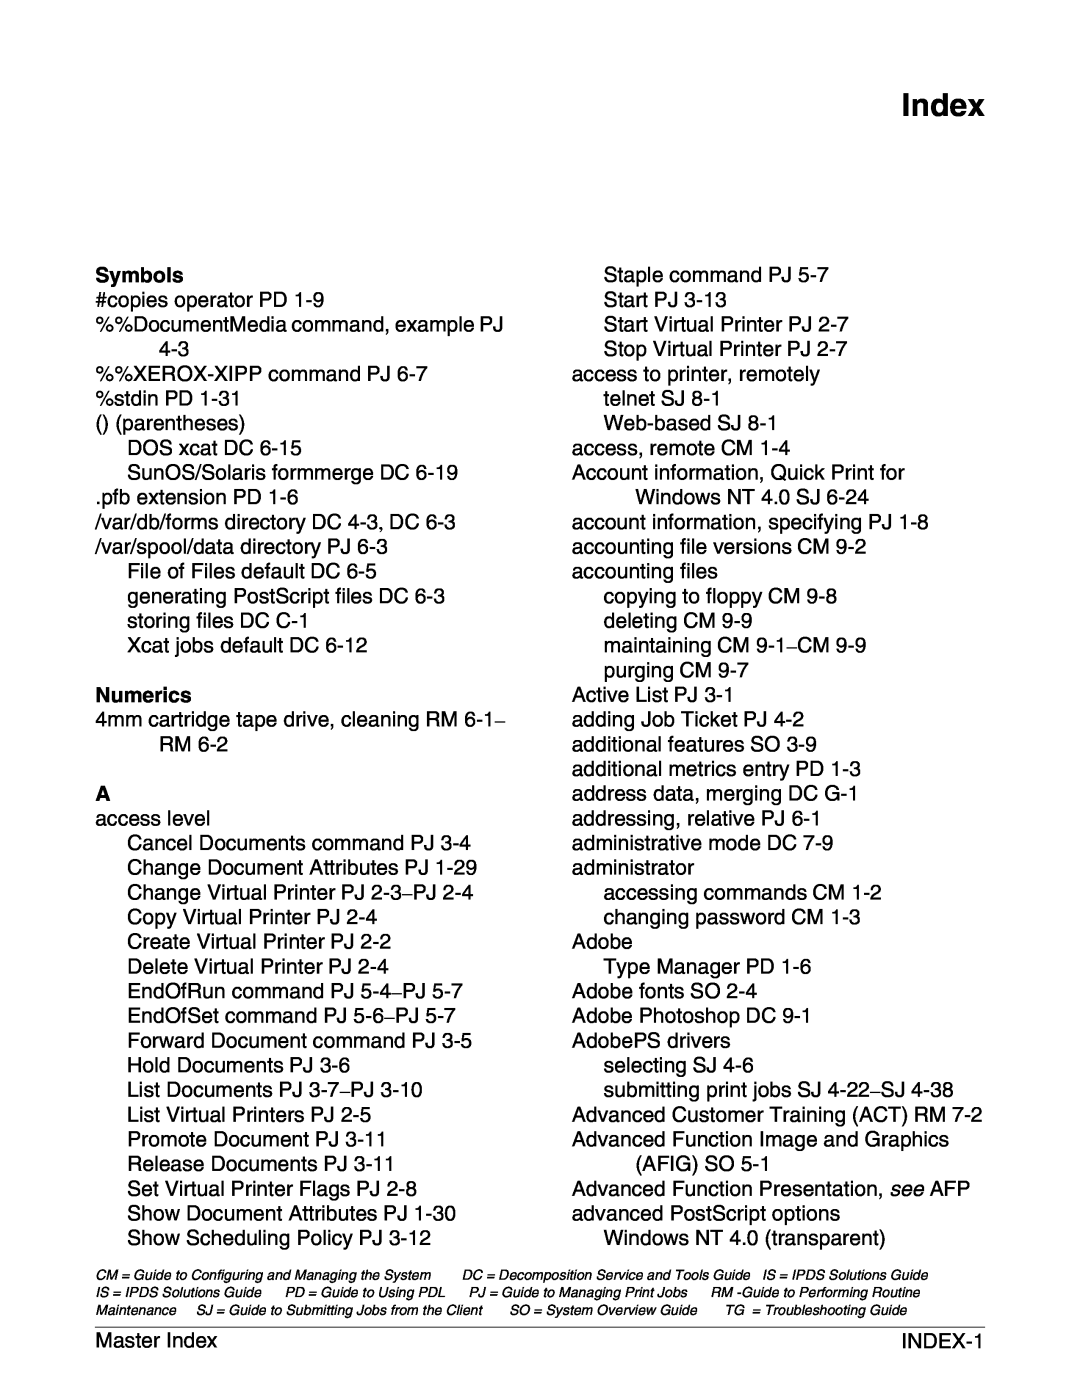 Xerox 4050/4090 NPS/NPS manual Symbols, Numerics, Index 